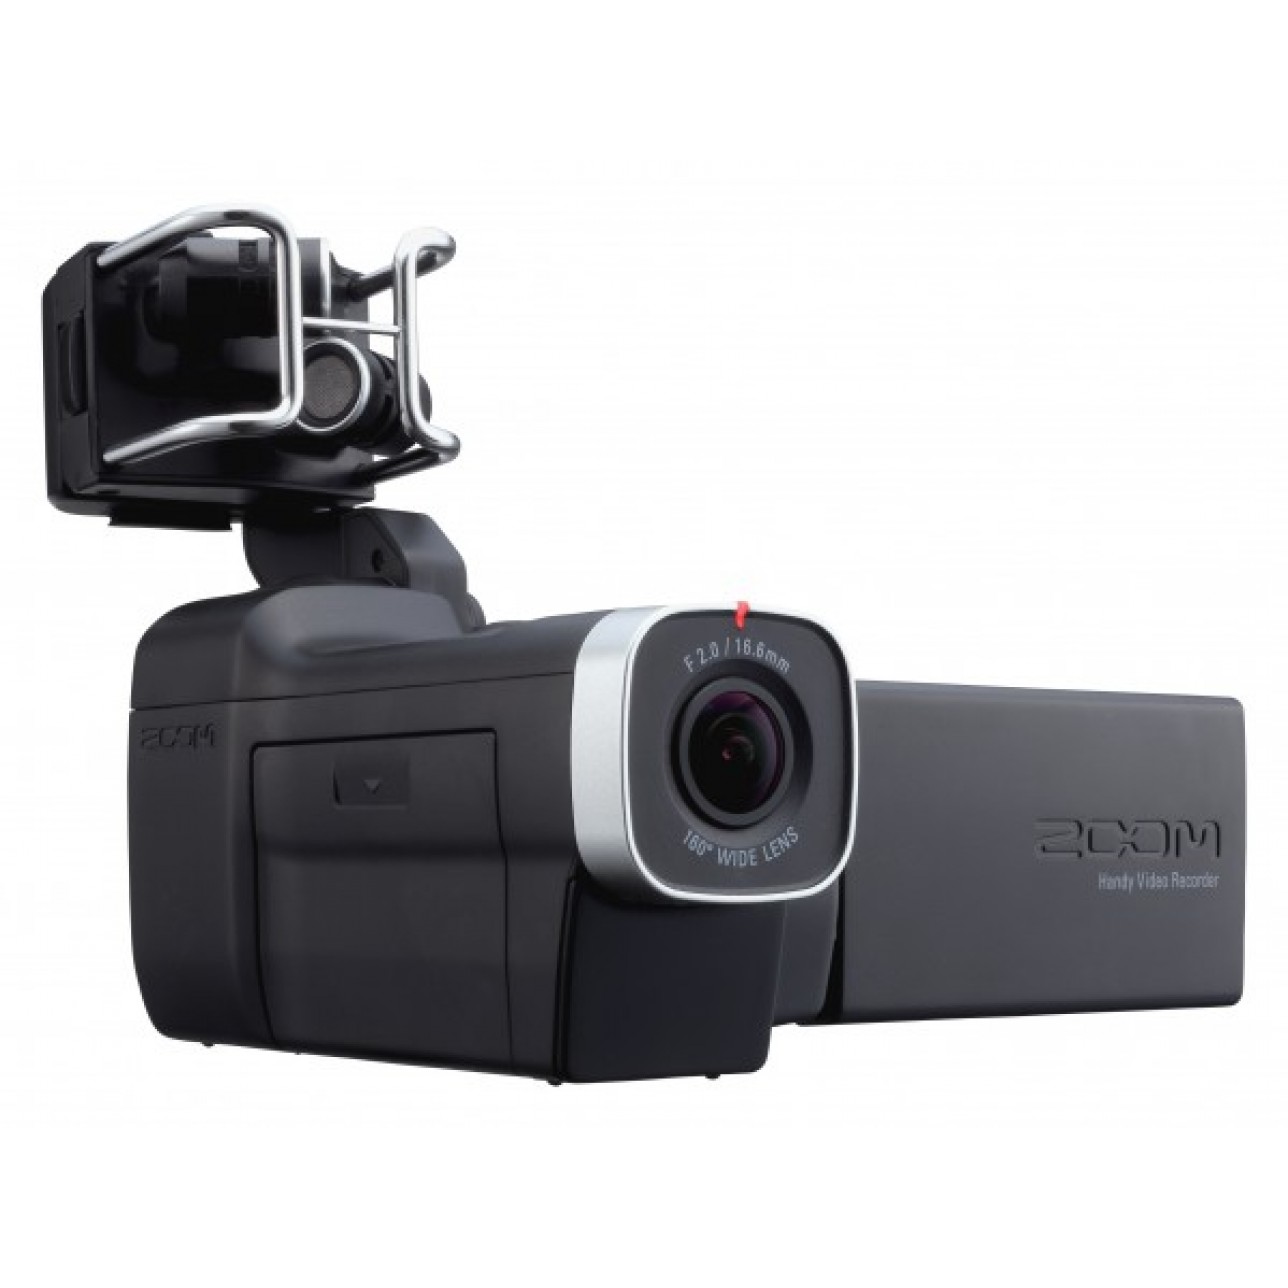 zoom video recording